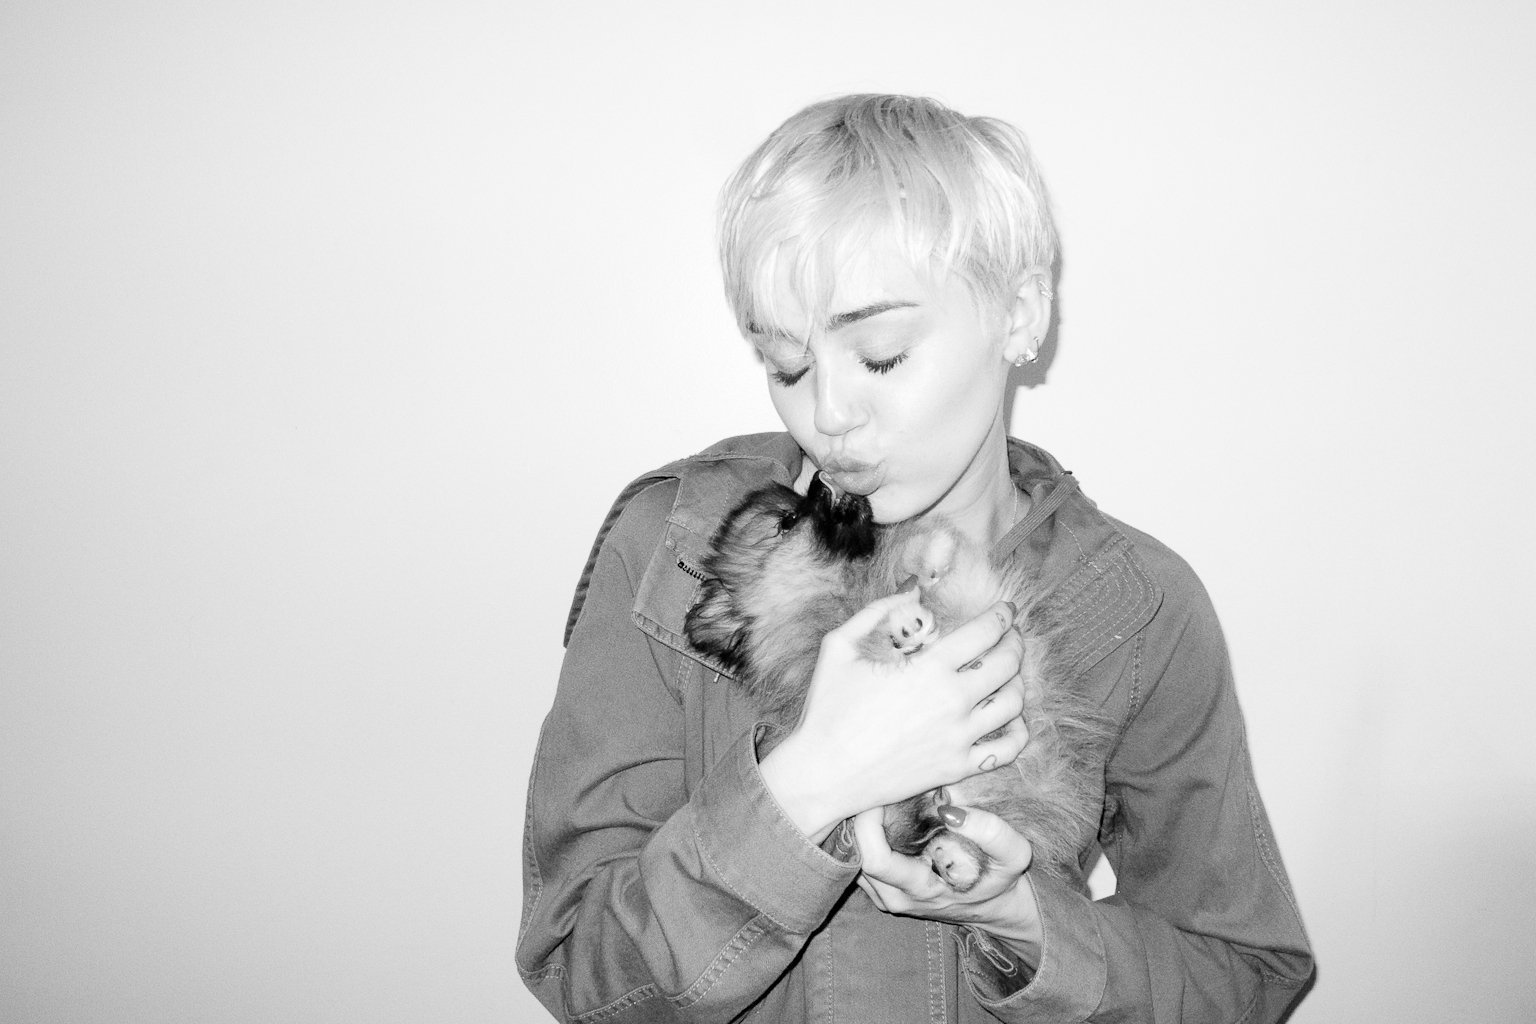 Miley Cyrus Personal Photos Hacked.